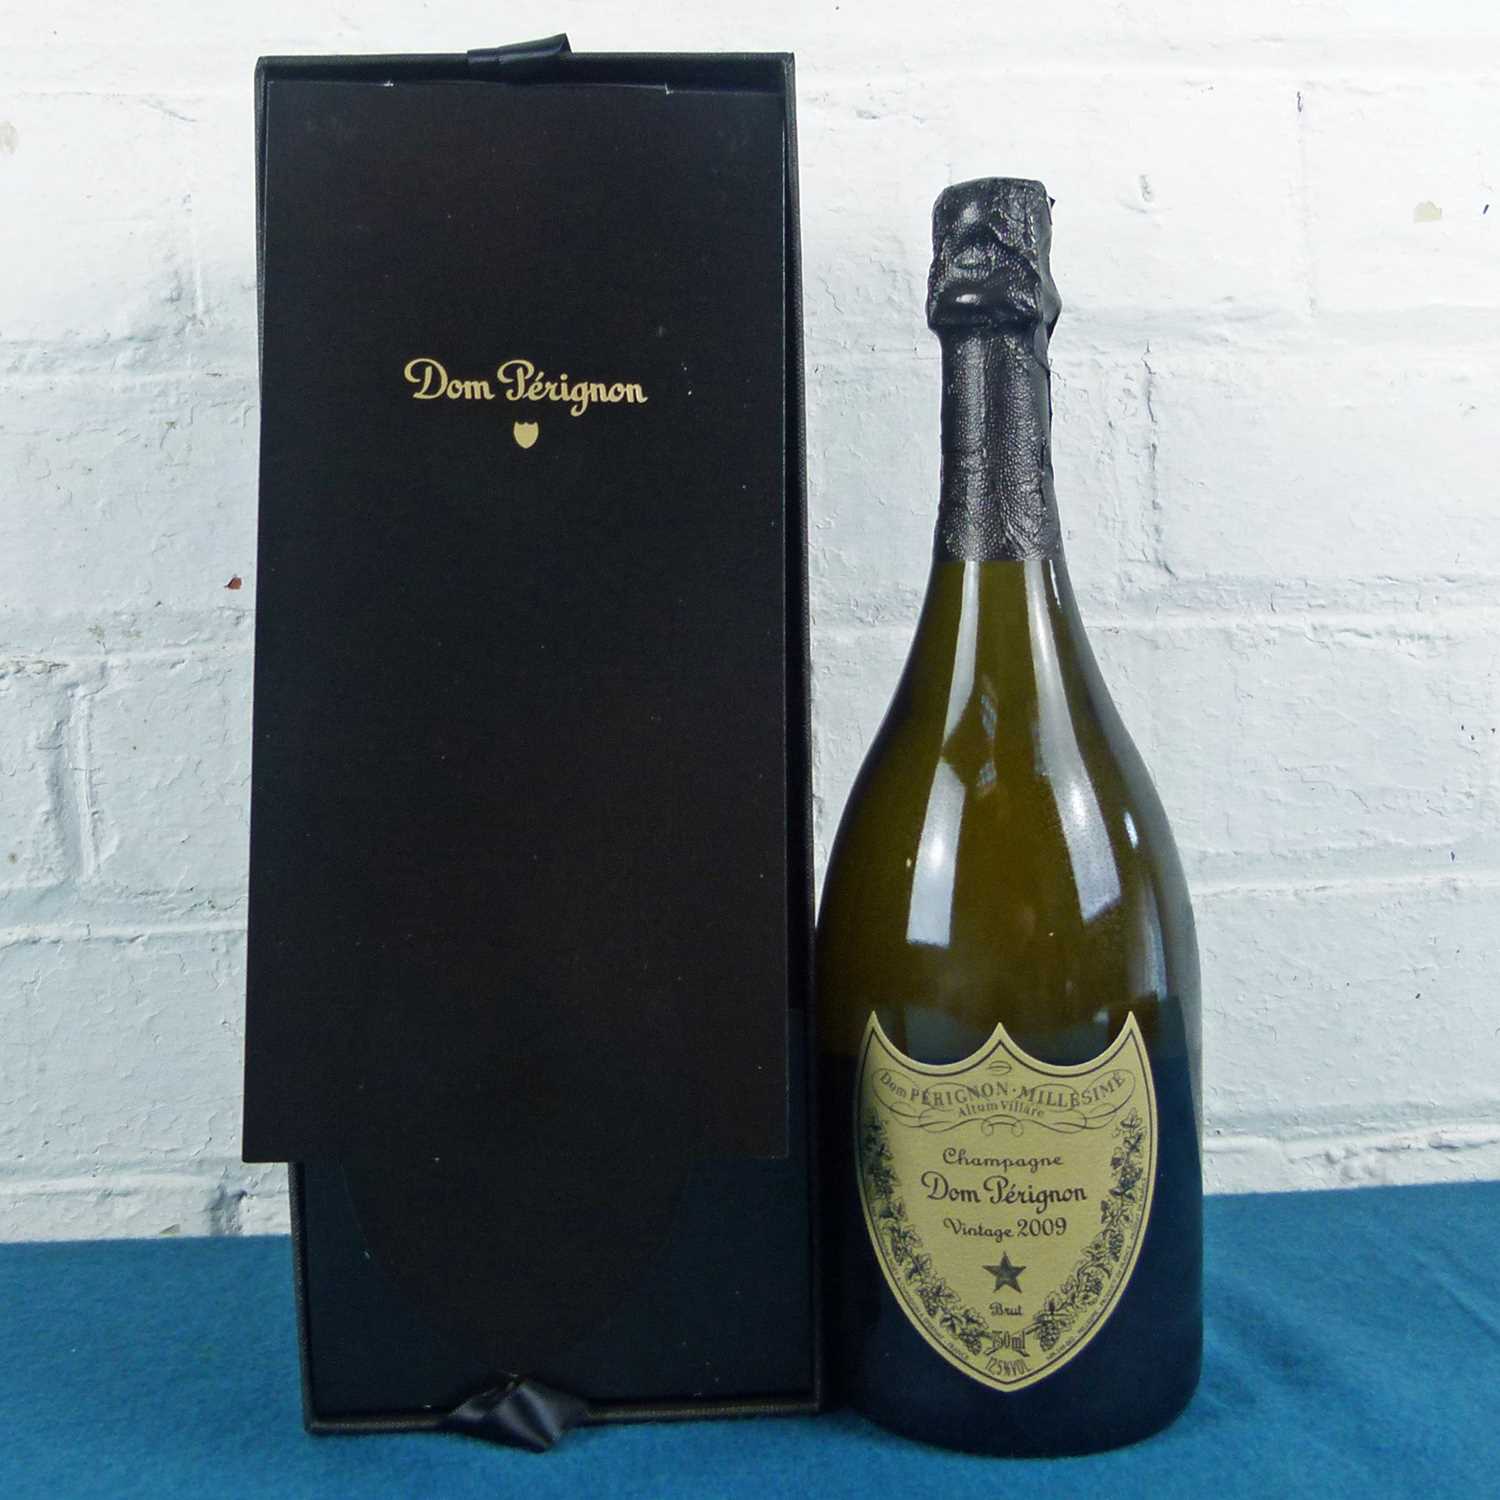 1 bottle Champagne ‘Dom Perignon’ 2009